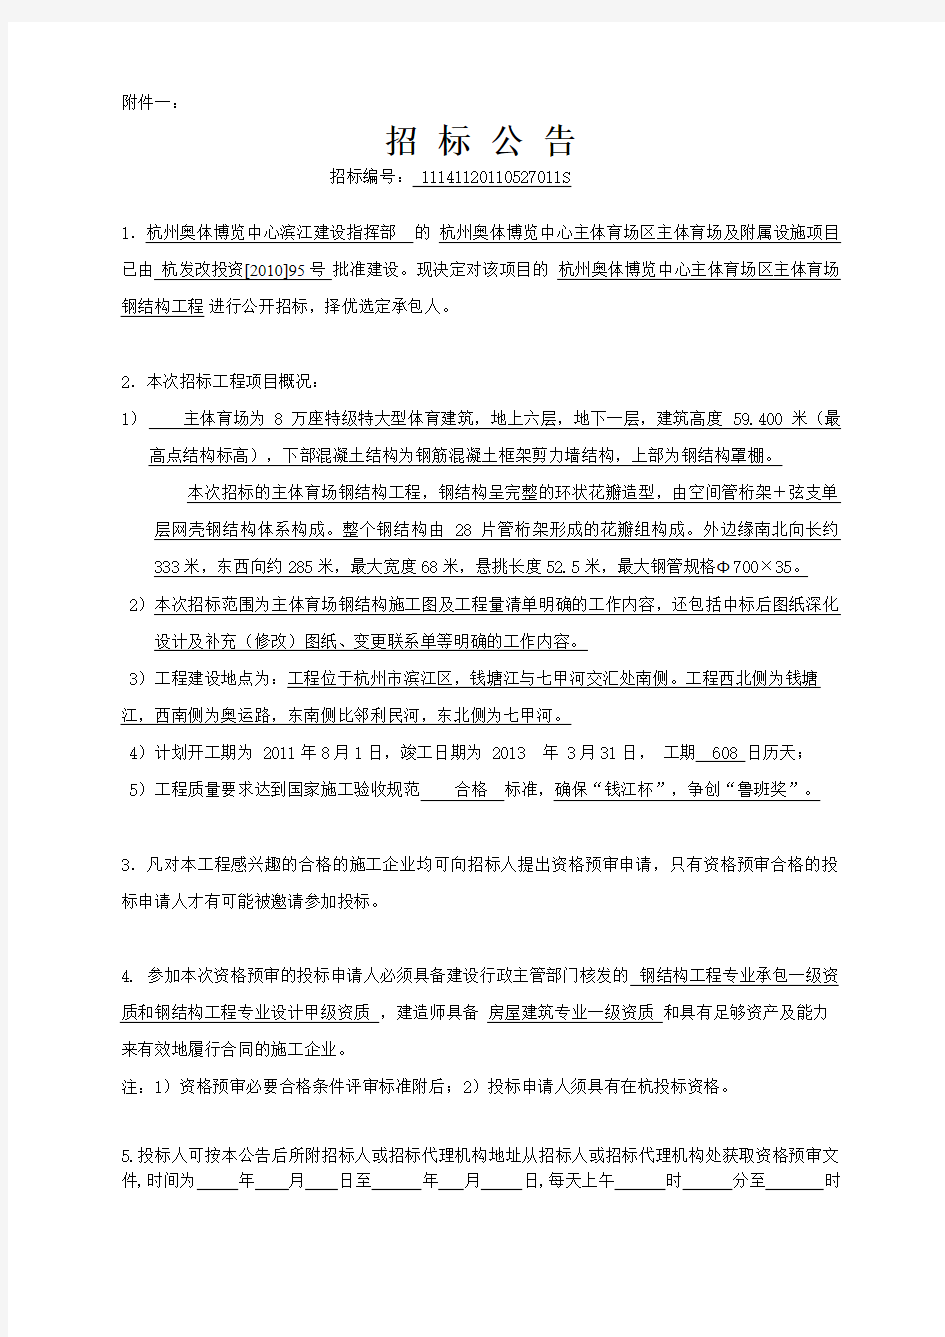 杭州奥体博览中心主体项目招标公告